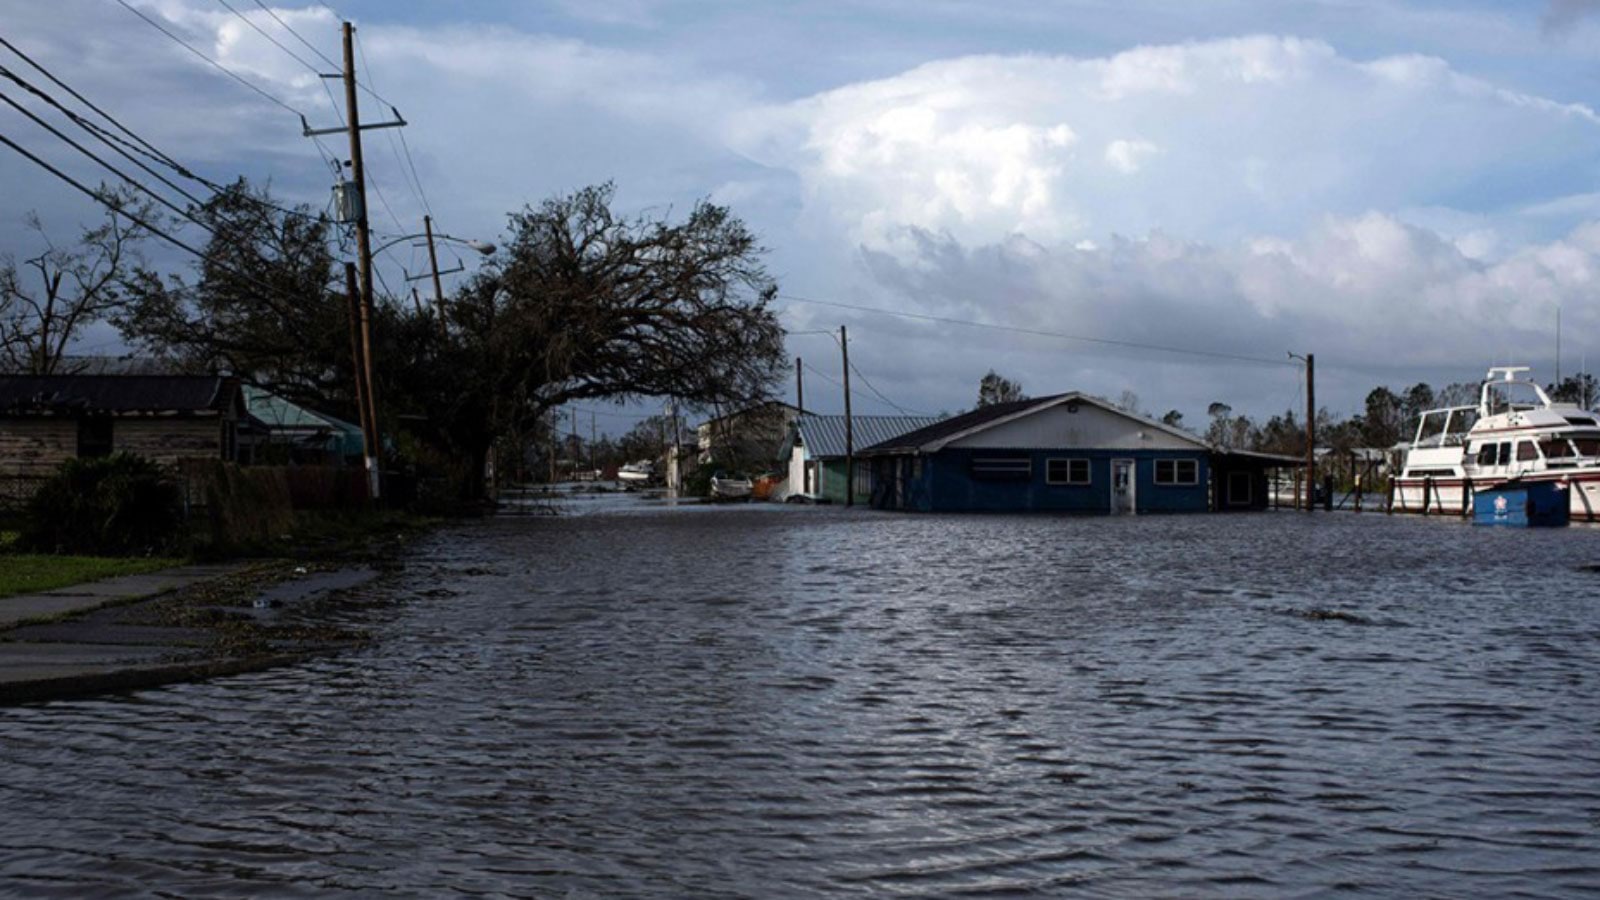 إعصار “أيدا” يلحق أضرارا “كارثية” بلويزيانا‎ الأمريكية